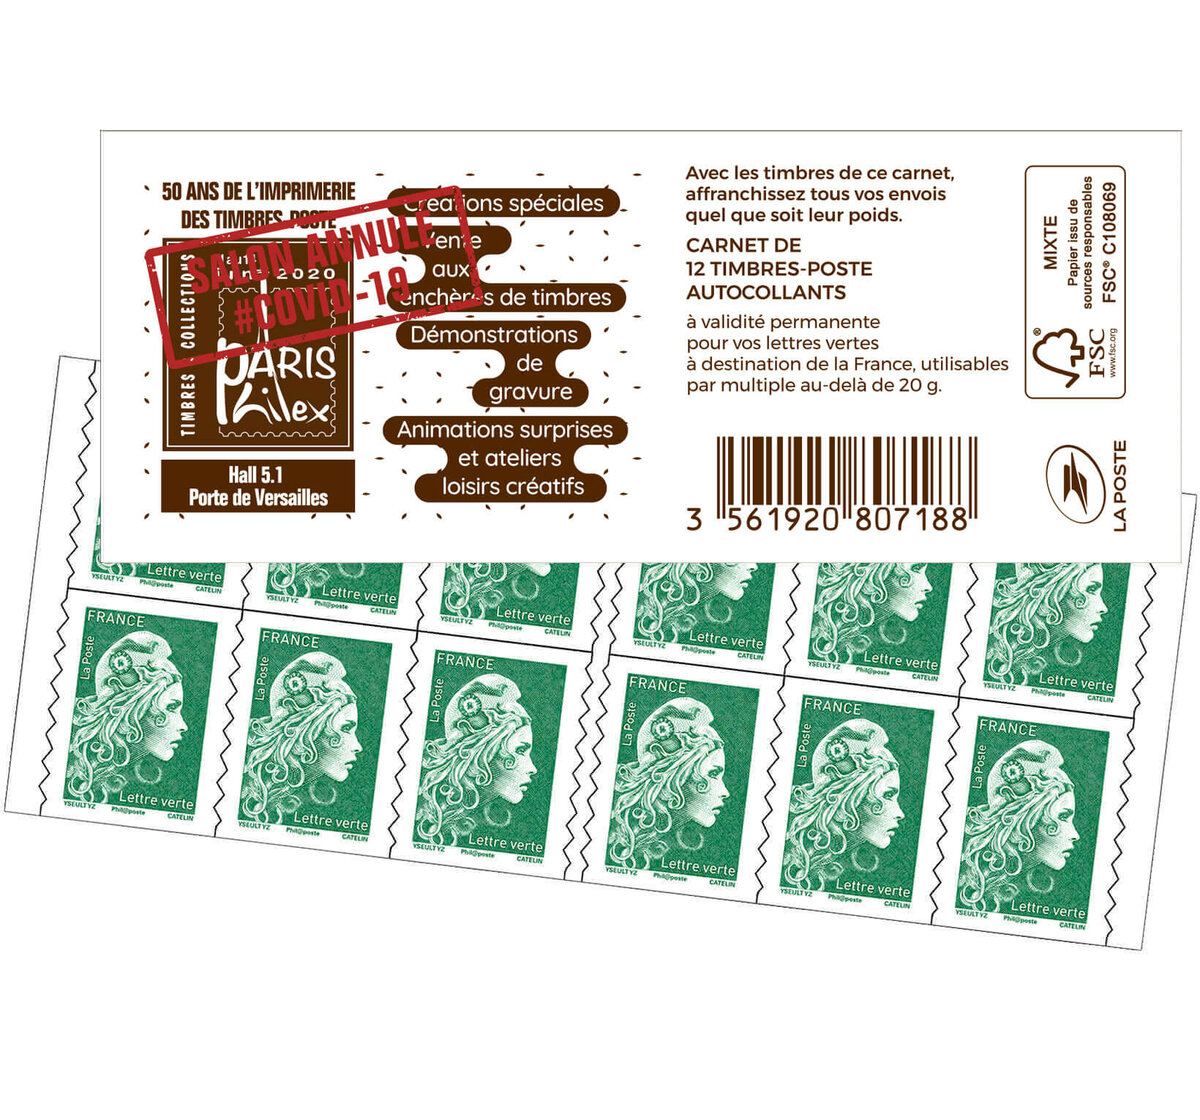 Marianne d´Yseult Digan Carnet de 12 timbres autoadhésifs pour lettre verte  jusqu´à 20g Demandes votre catalogue Philaposte La référence des amoureux  des beaux timbres Carnet Marianne l´engagée - Timbre de 2022